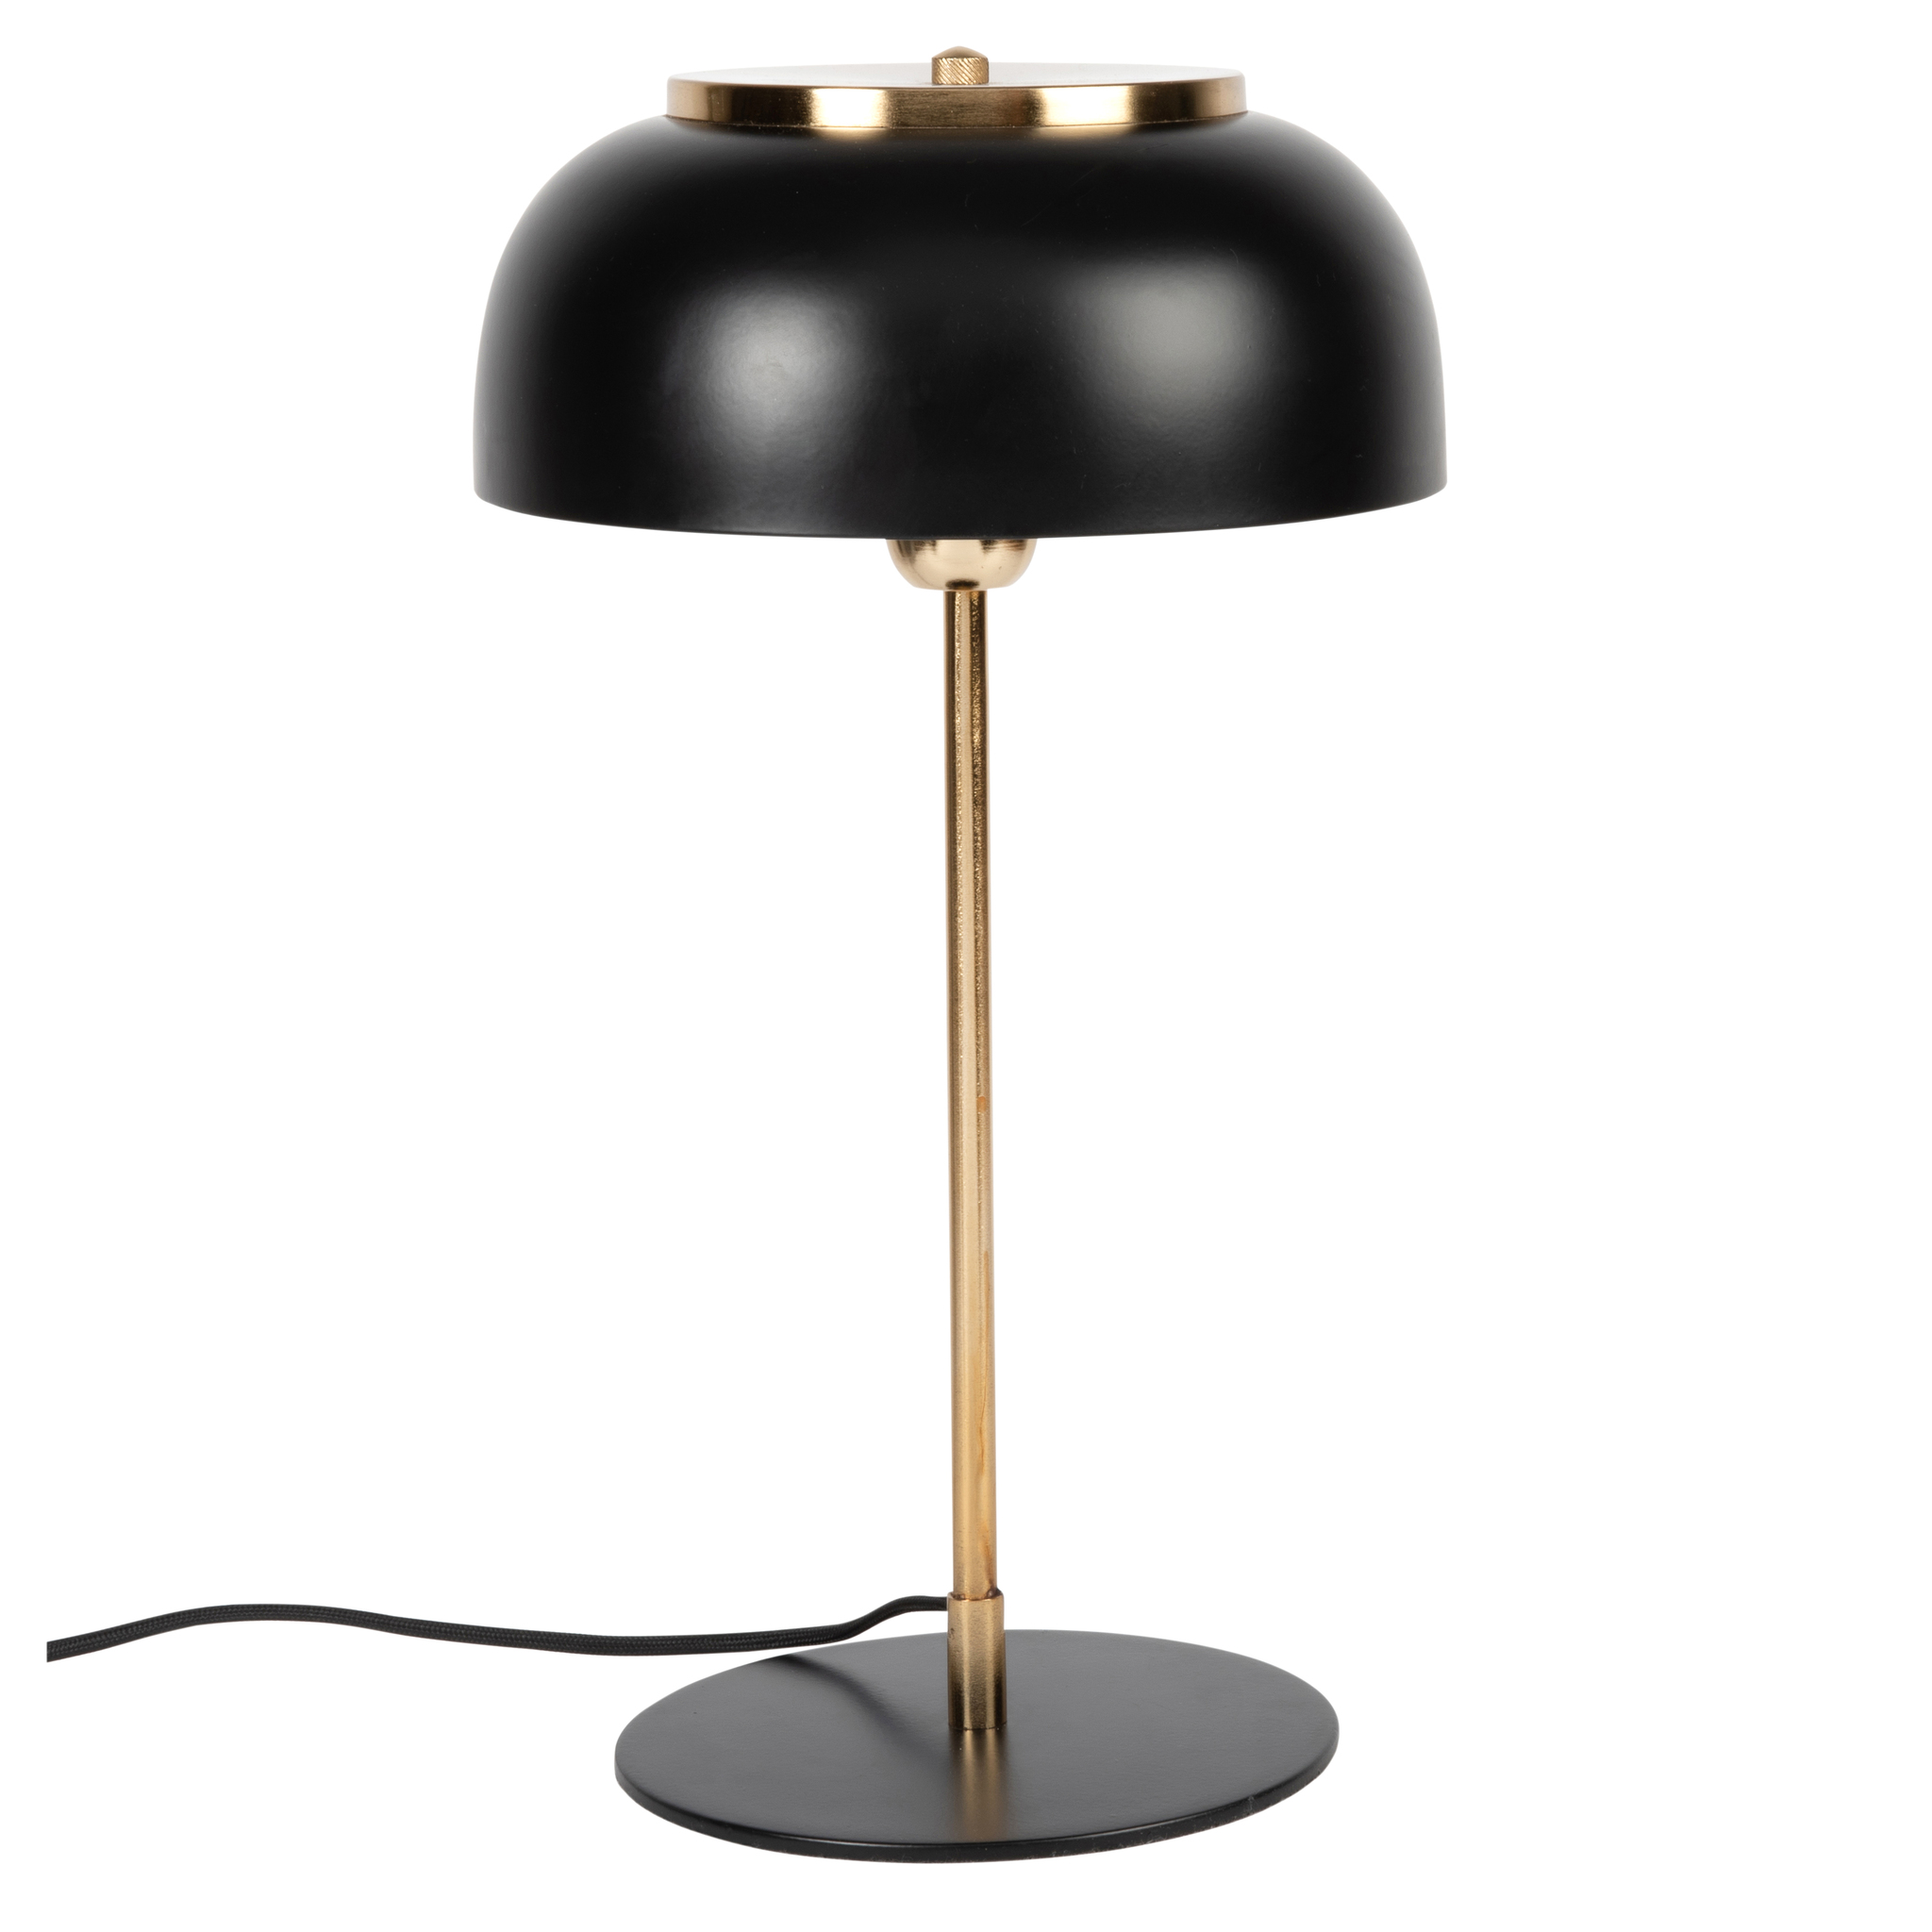 Nos gusta esta lámpara de metal negro de la nueva colección de Maison du Monde. Perfecta en cualquier parte.